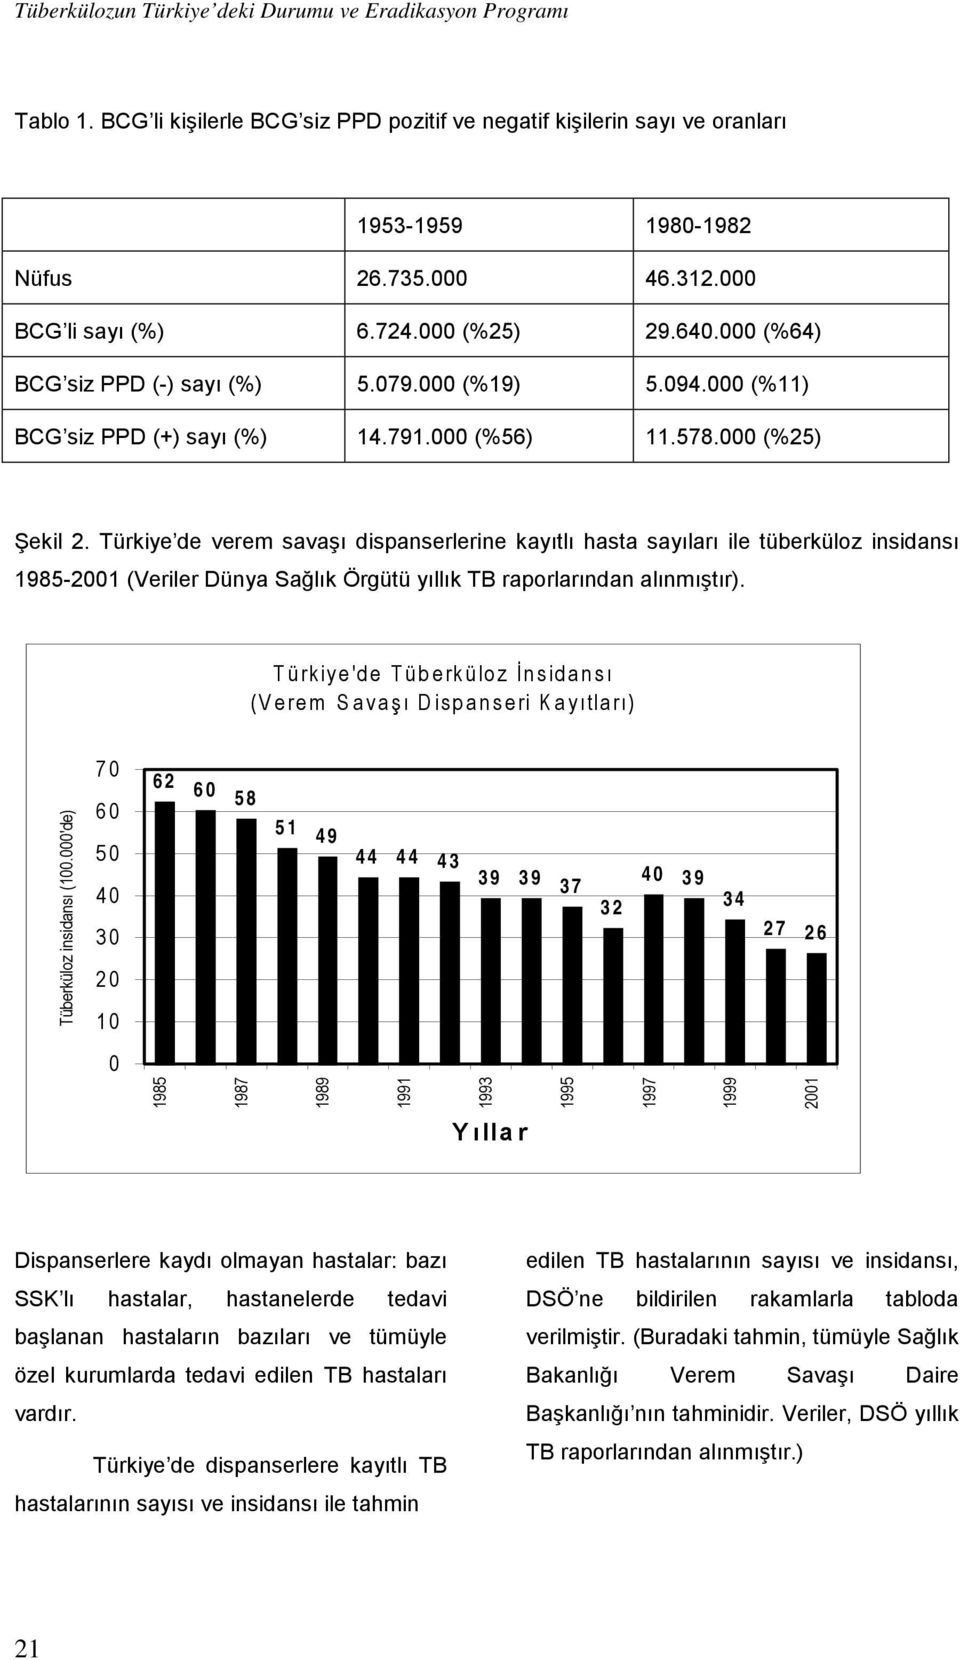 Türkiye de verem savaşı dispanserlerine kayıtlı hasta sayıları ile tüberküloz insidansı 1985-2001 (Veriler Dünya Sağlık Örgütü yıllık TB raporlarından alınmıştır).